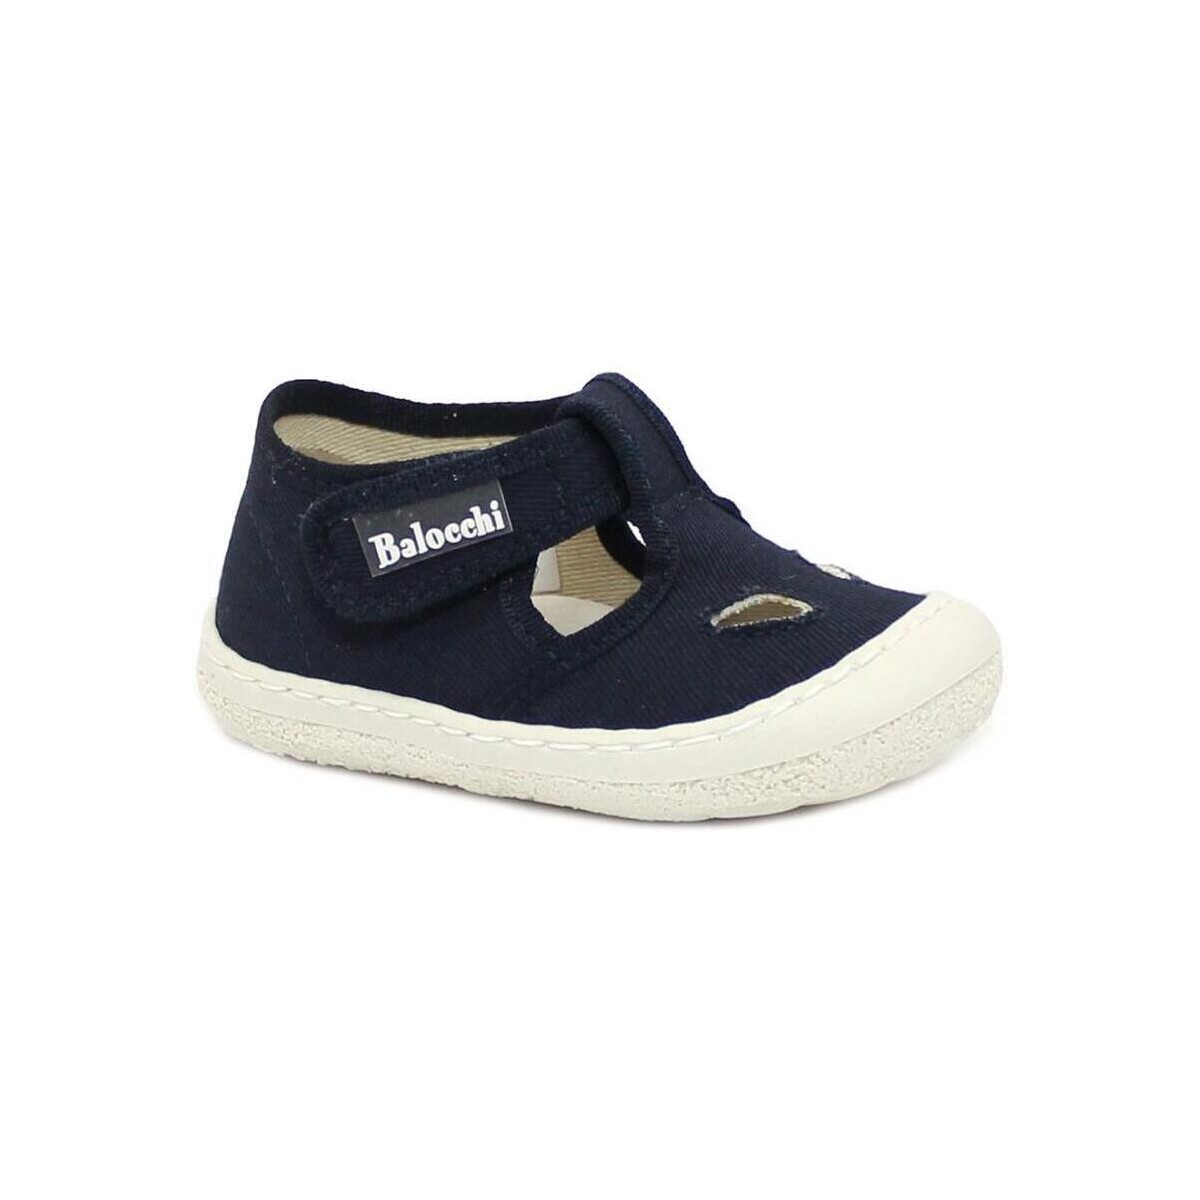 Schuhe Kinder Babyschuhe Balocchi BAL-CCC-144374-BL Blau